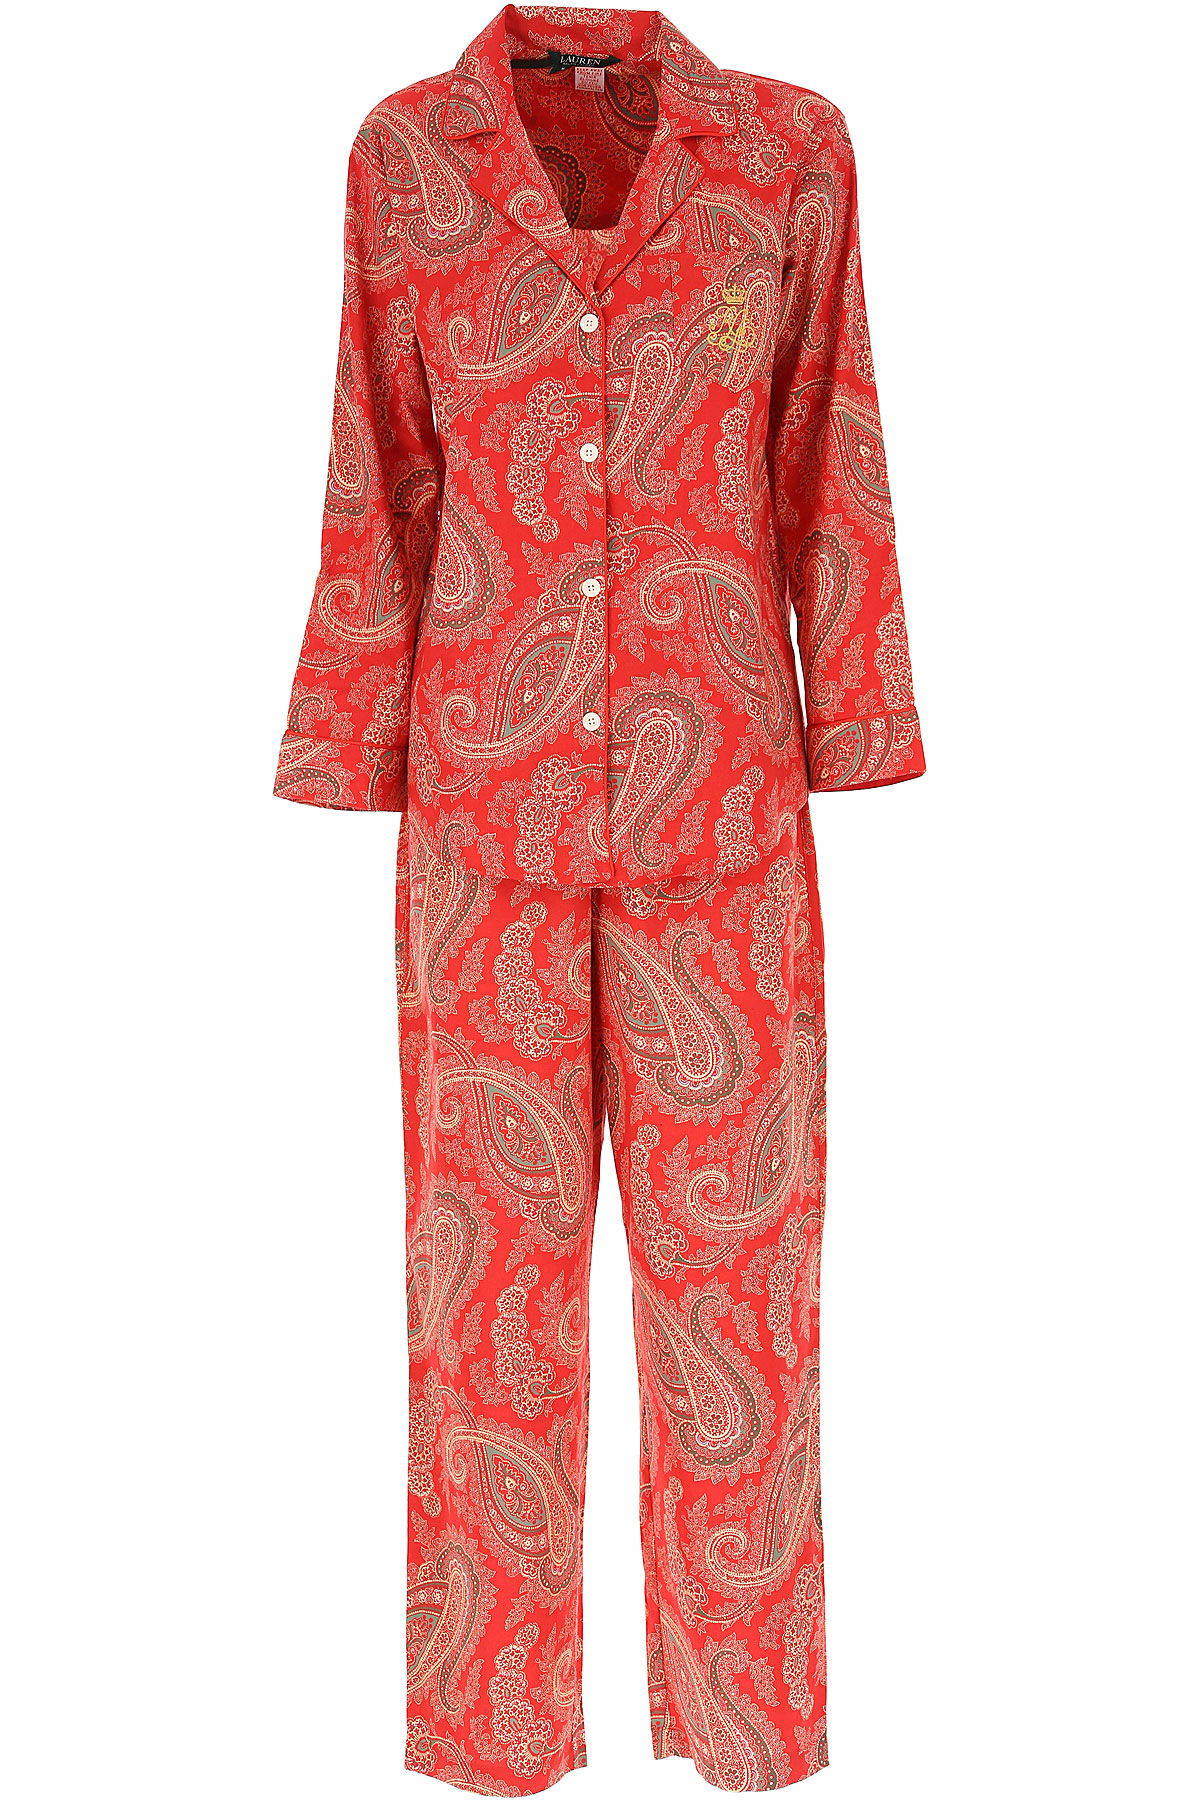 Ralph Lauren Pyjama für Damen Günstig im Sale, Rot, Baumwolle, 2017, L